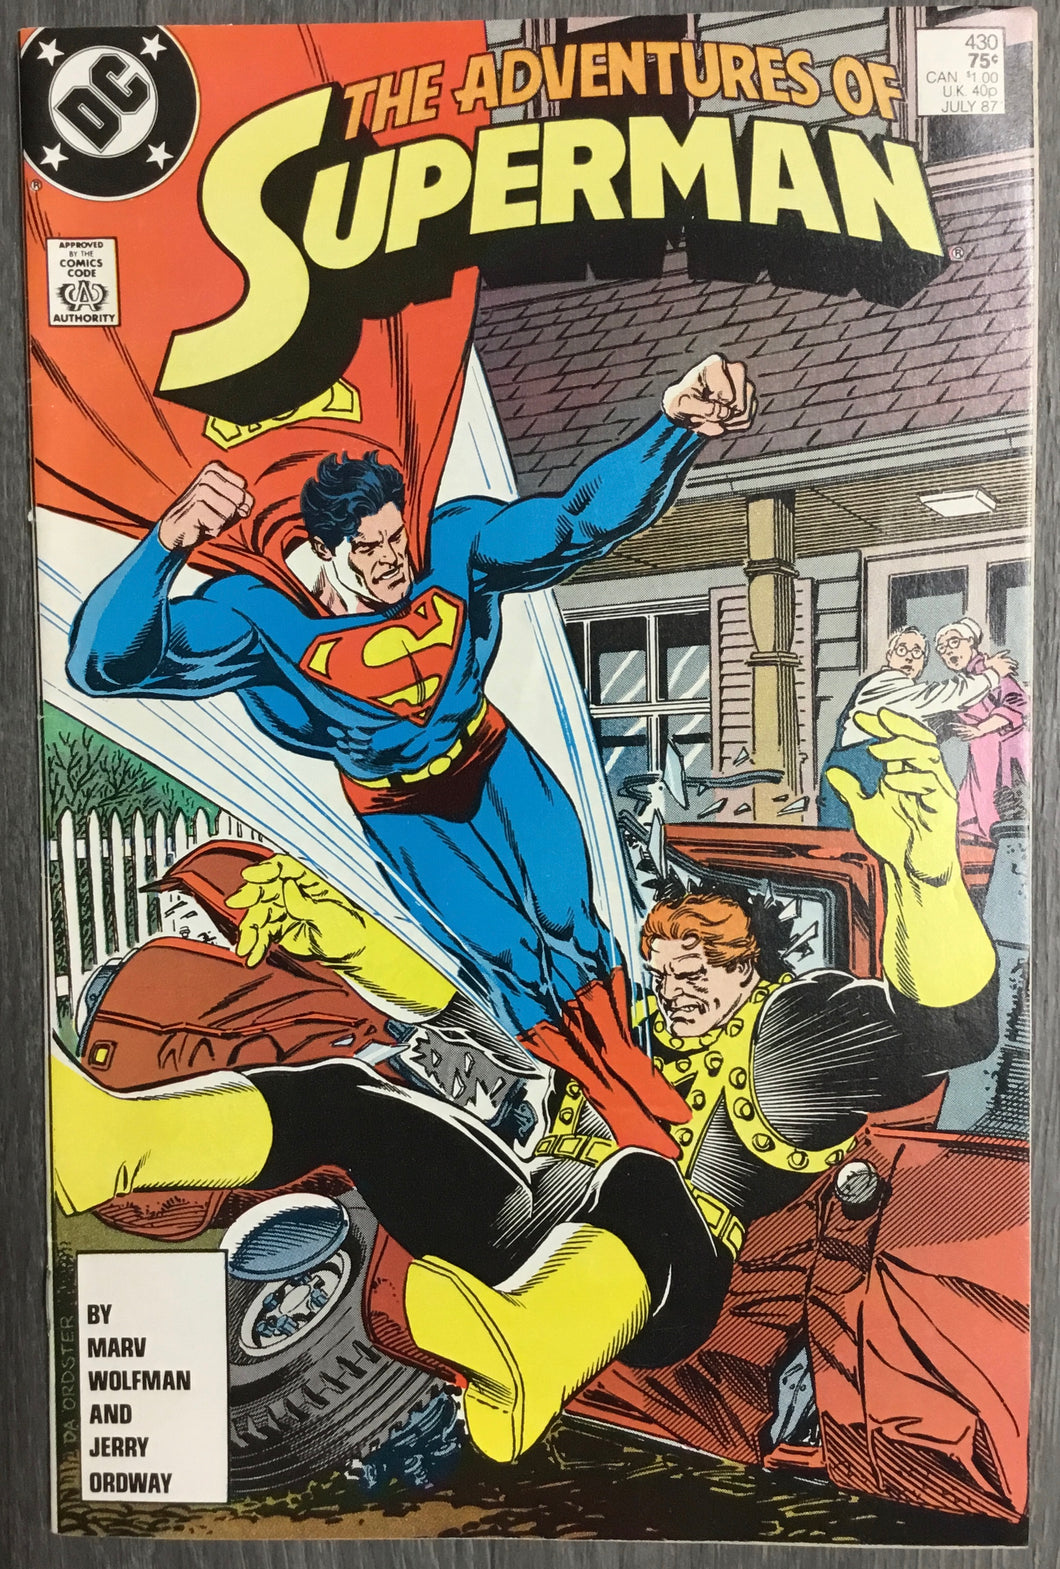 Adventures of Superman No. #430 1987 DC Comics